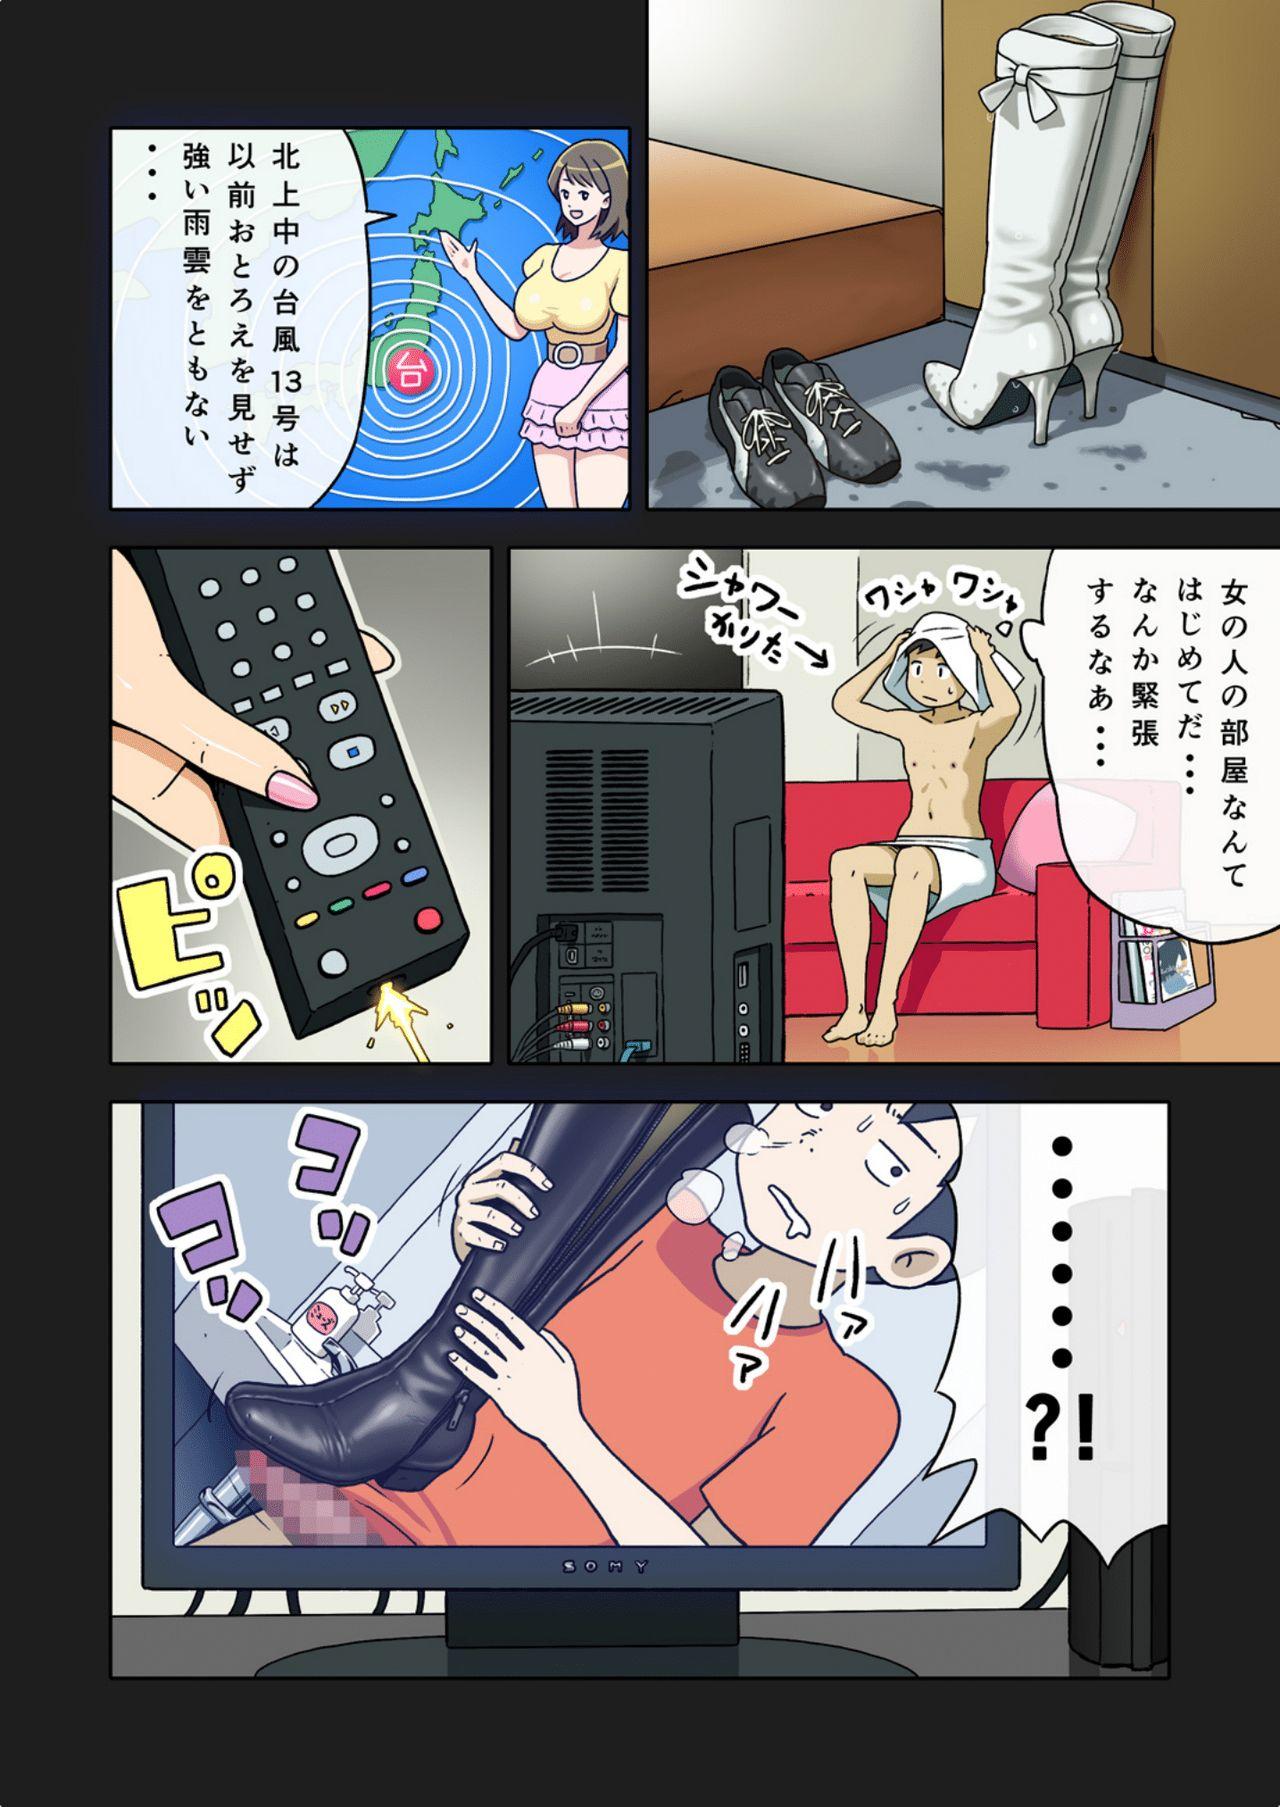 Rope [Enka Boots] Enka Boots no Manga 1 - Juku no Sensei ga Joou-sama V4.0 - Original Athletic - Page 9